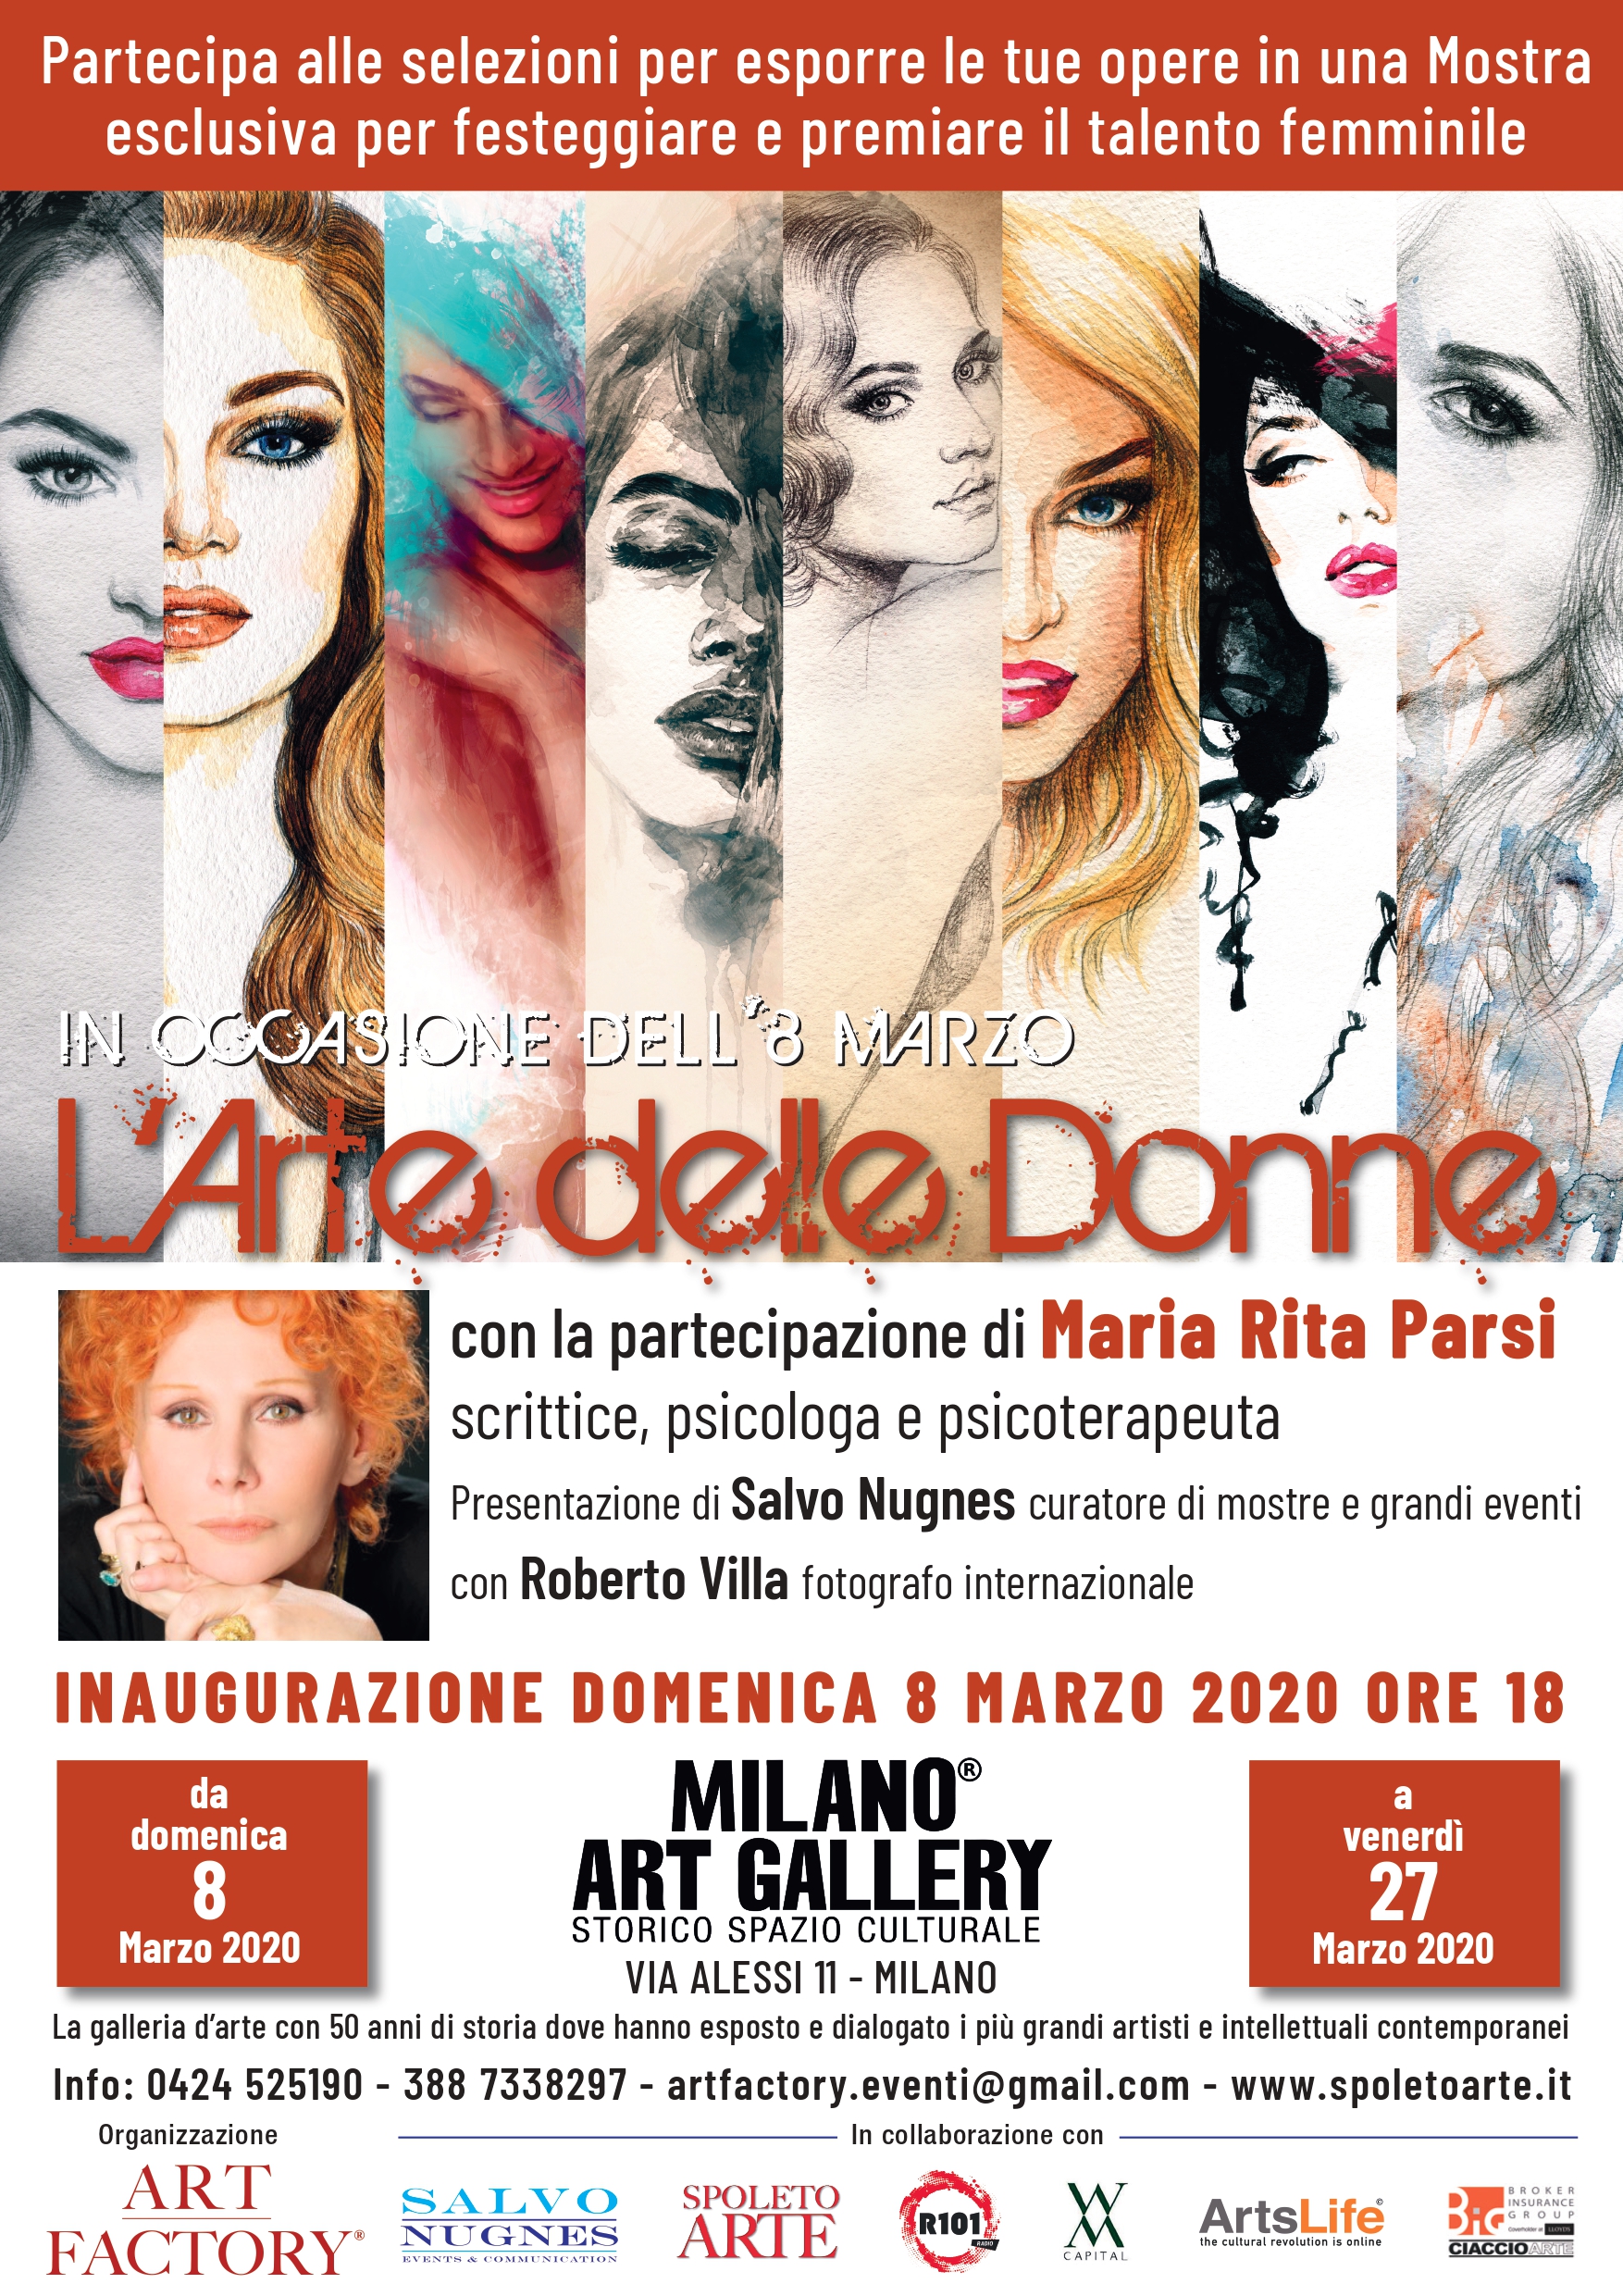 Milano Art Gallery: la donna nell’arte, la donna e l’arte con Parsi, Nugnes e Villa